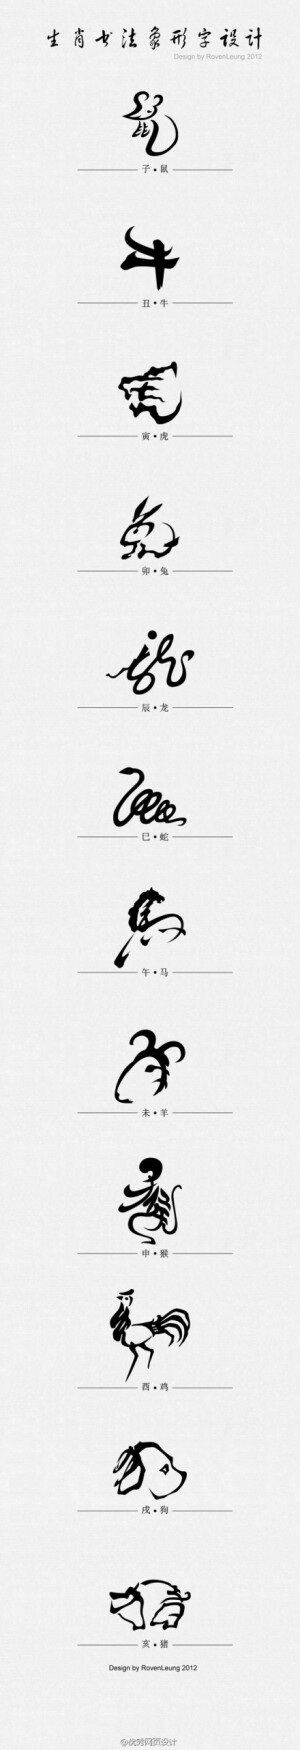 十二生肖字体设计